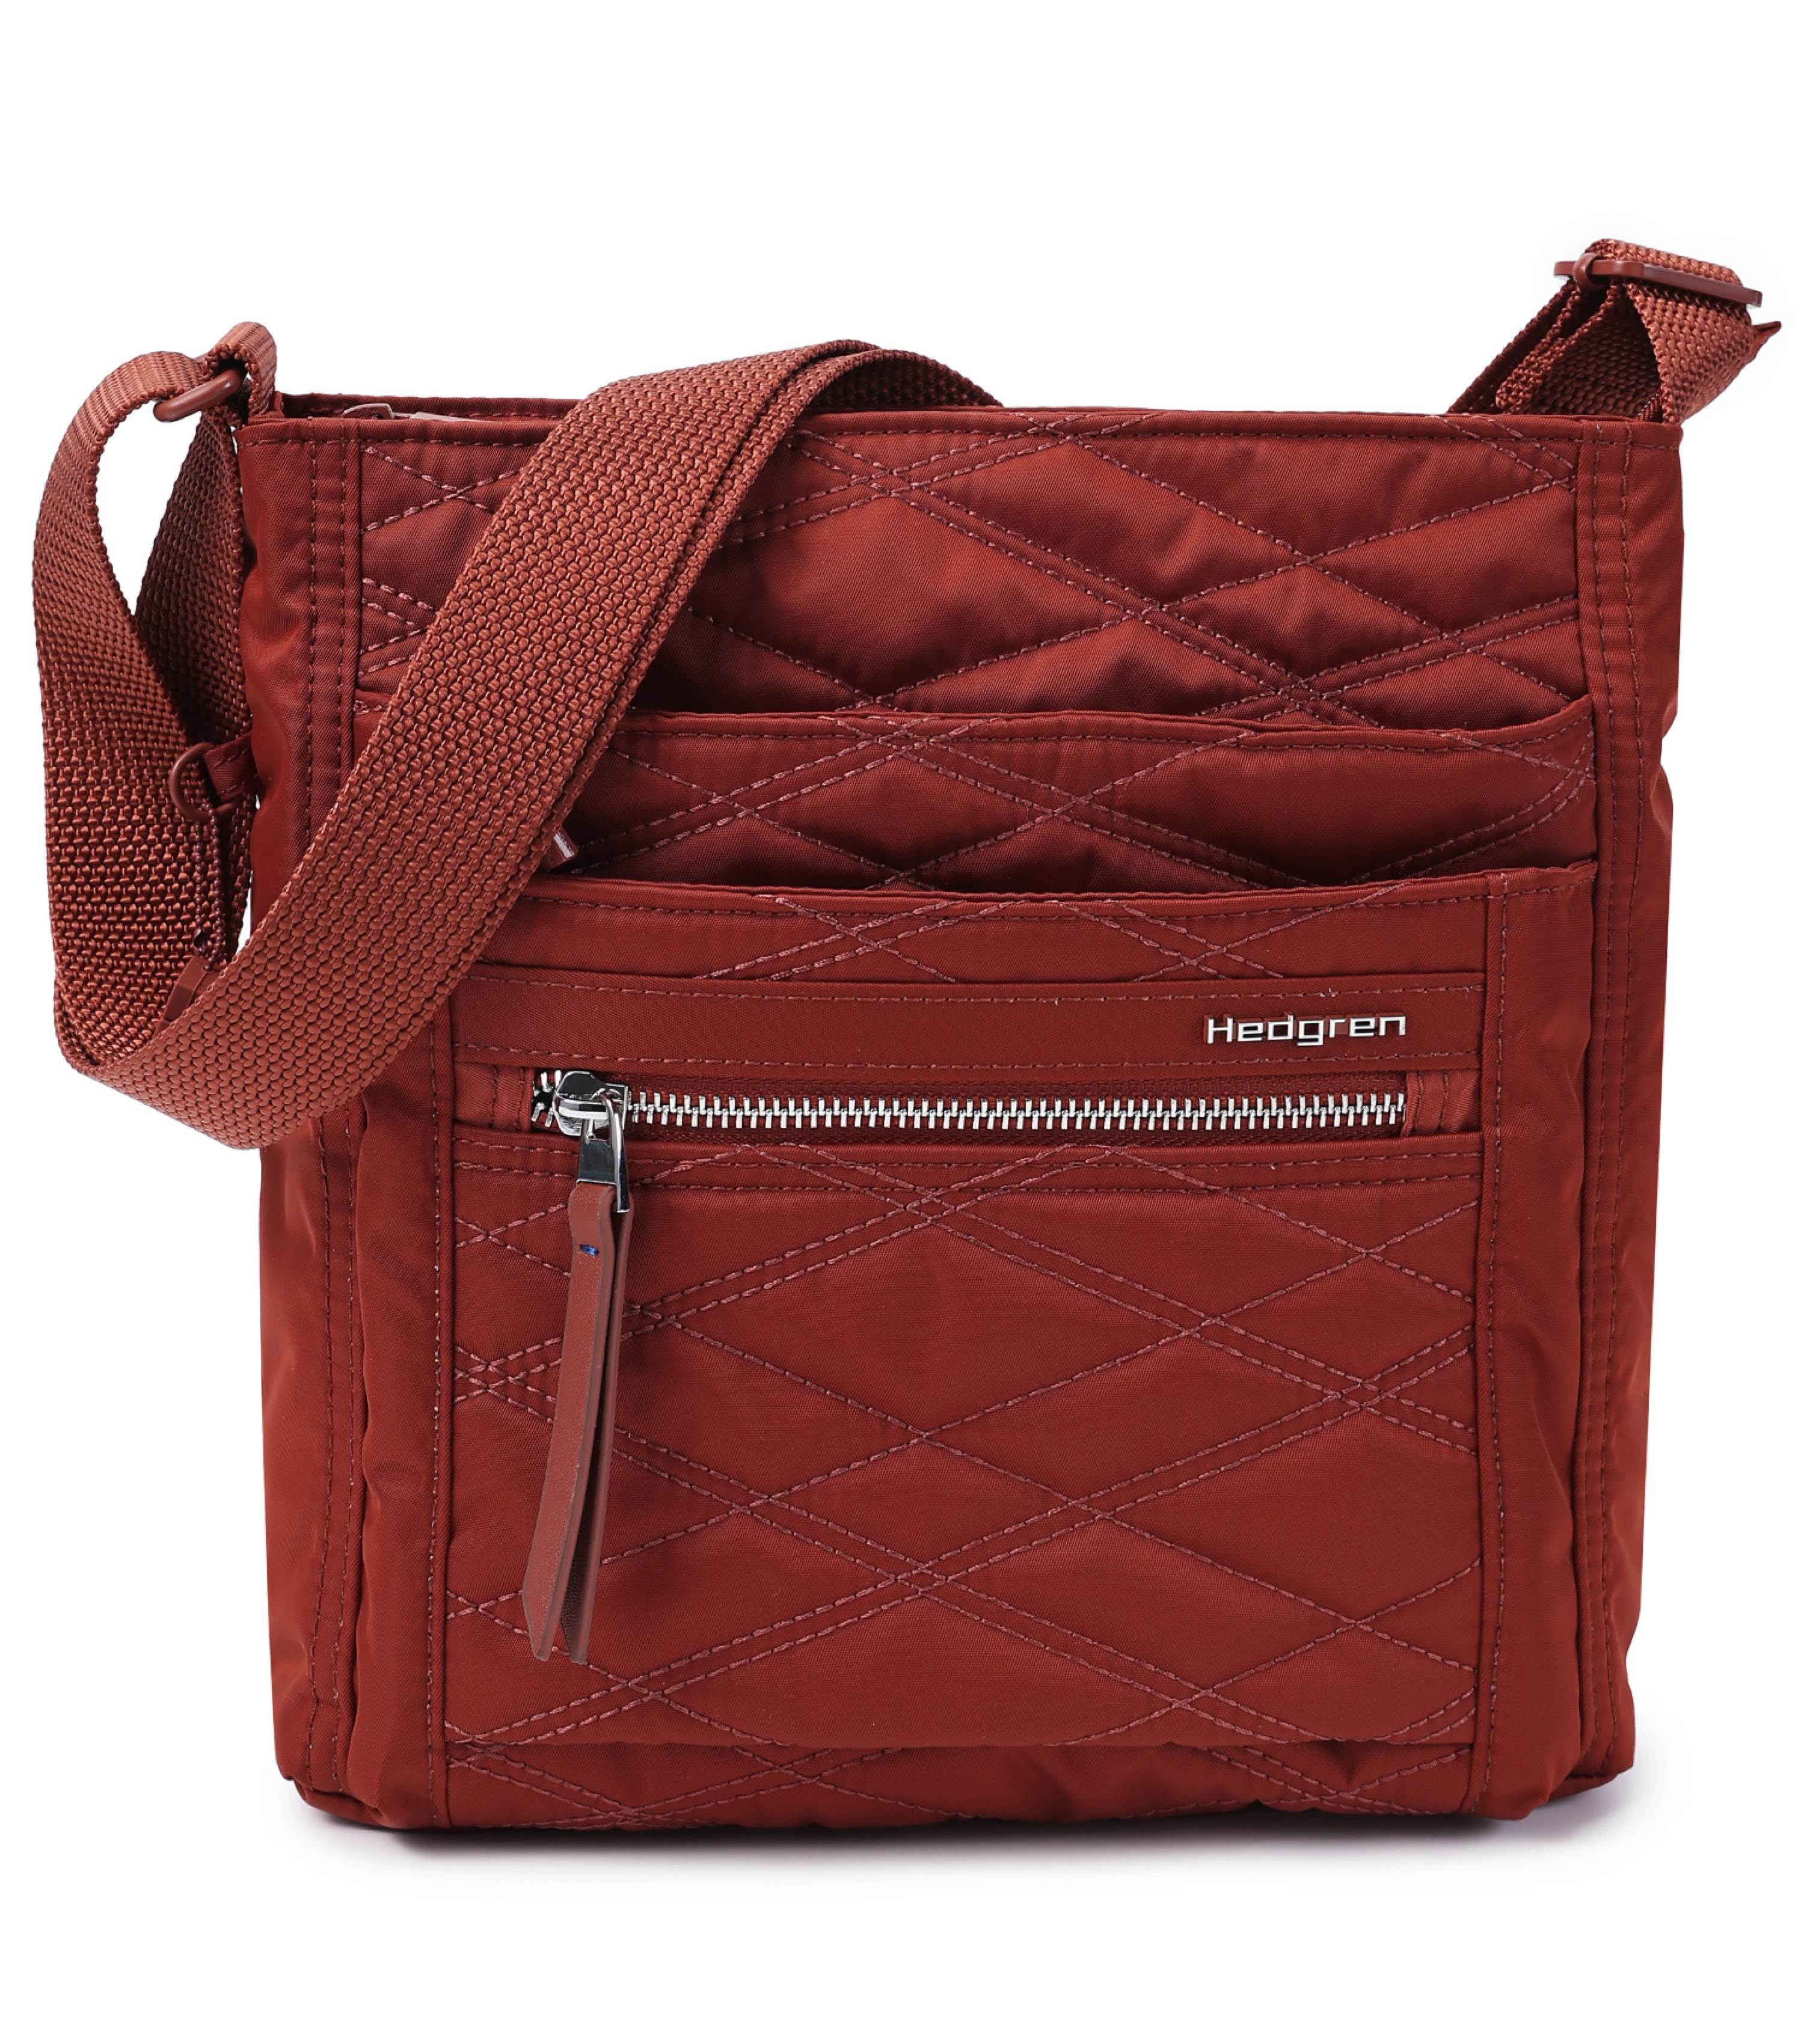 Hedgren Handbags : Bags & Accessories - Walmart.com